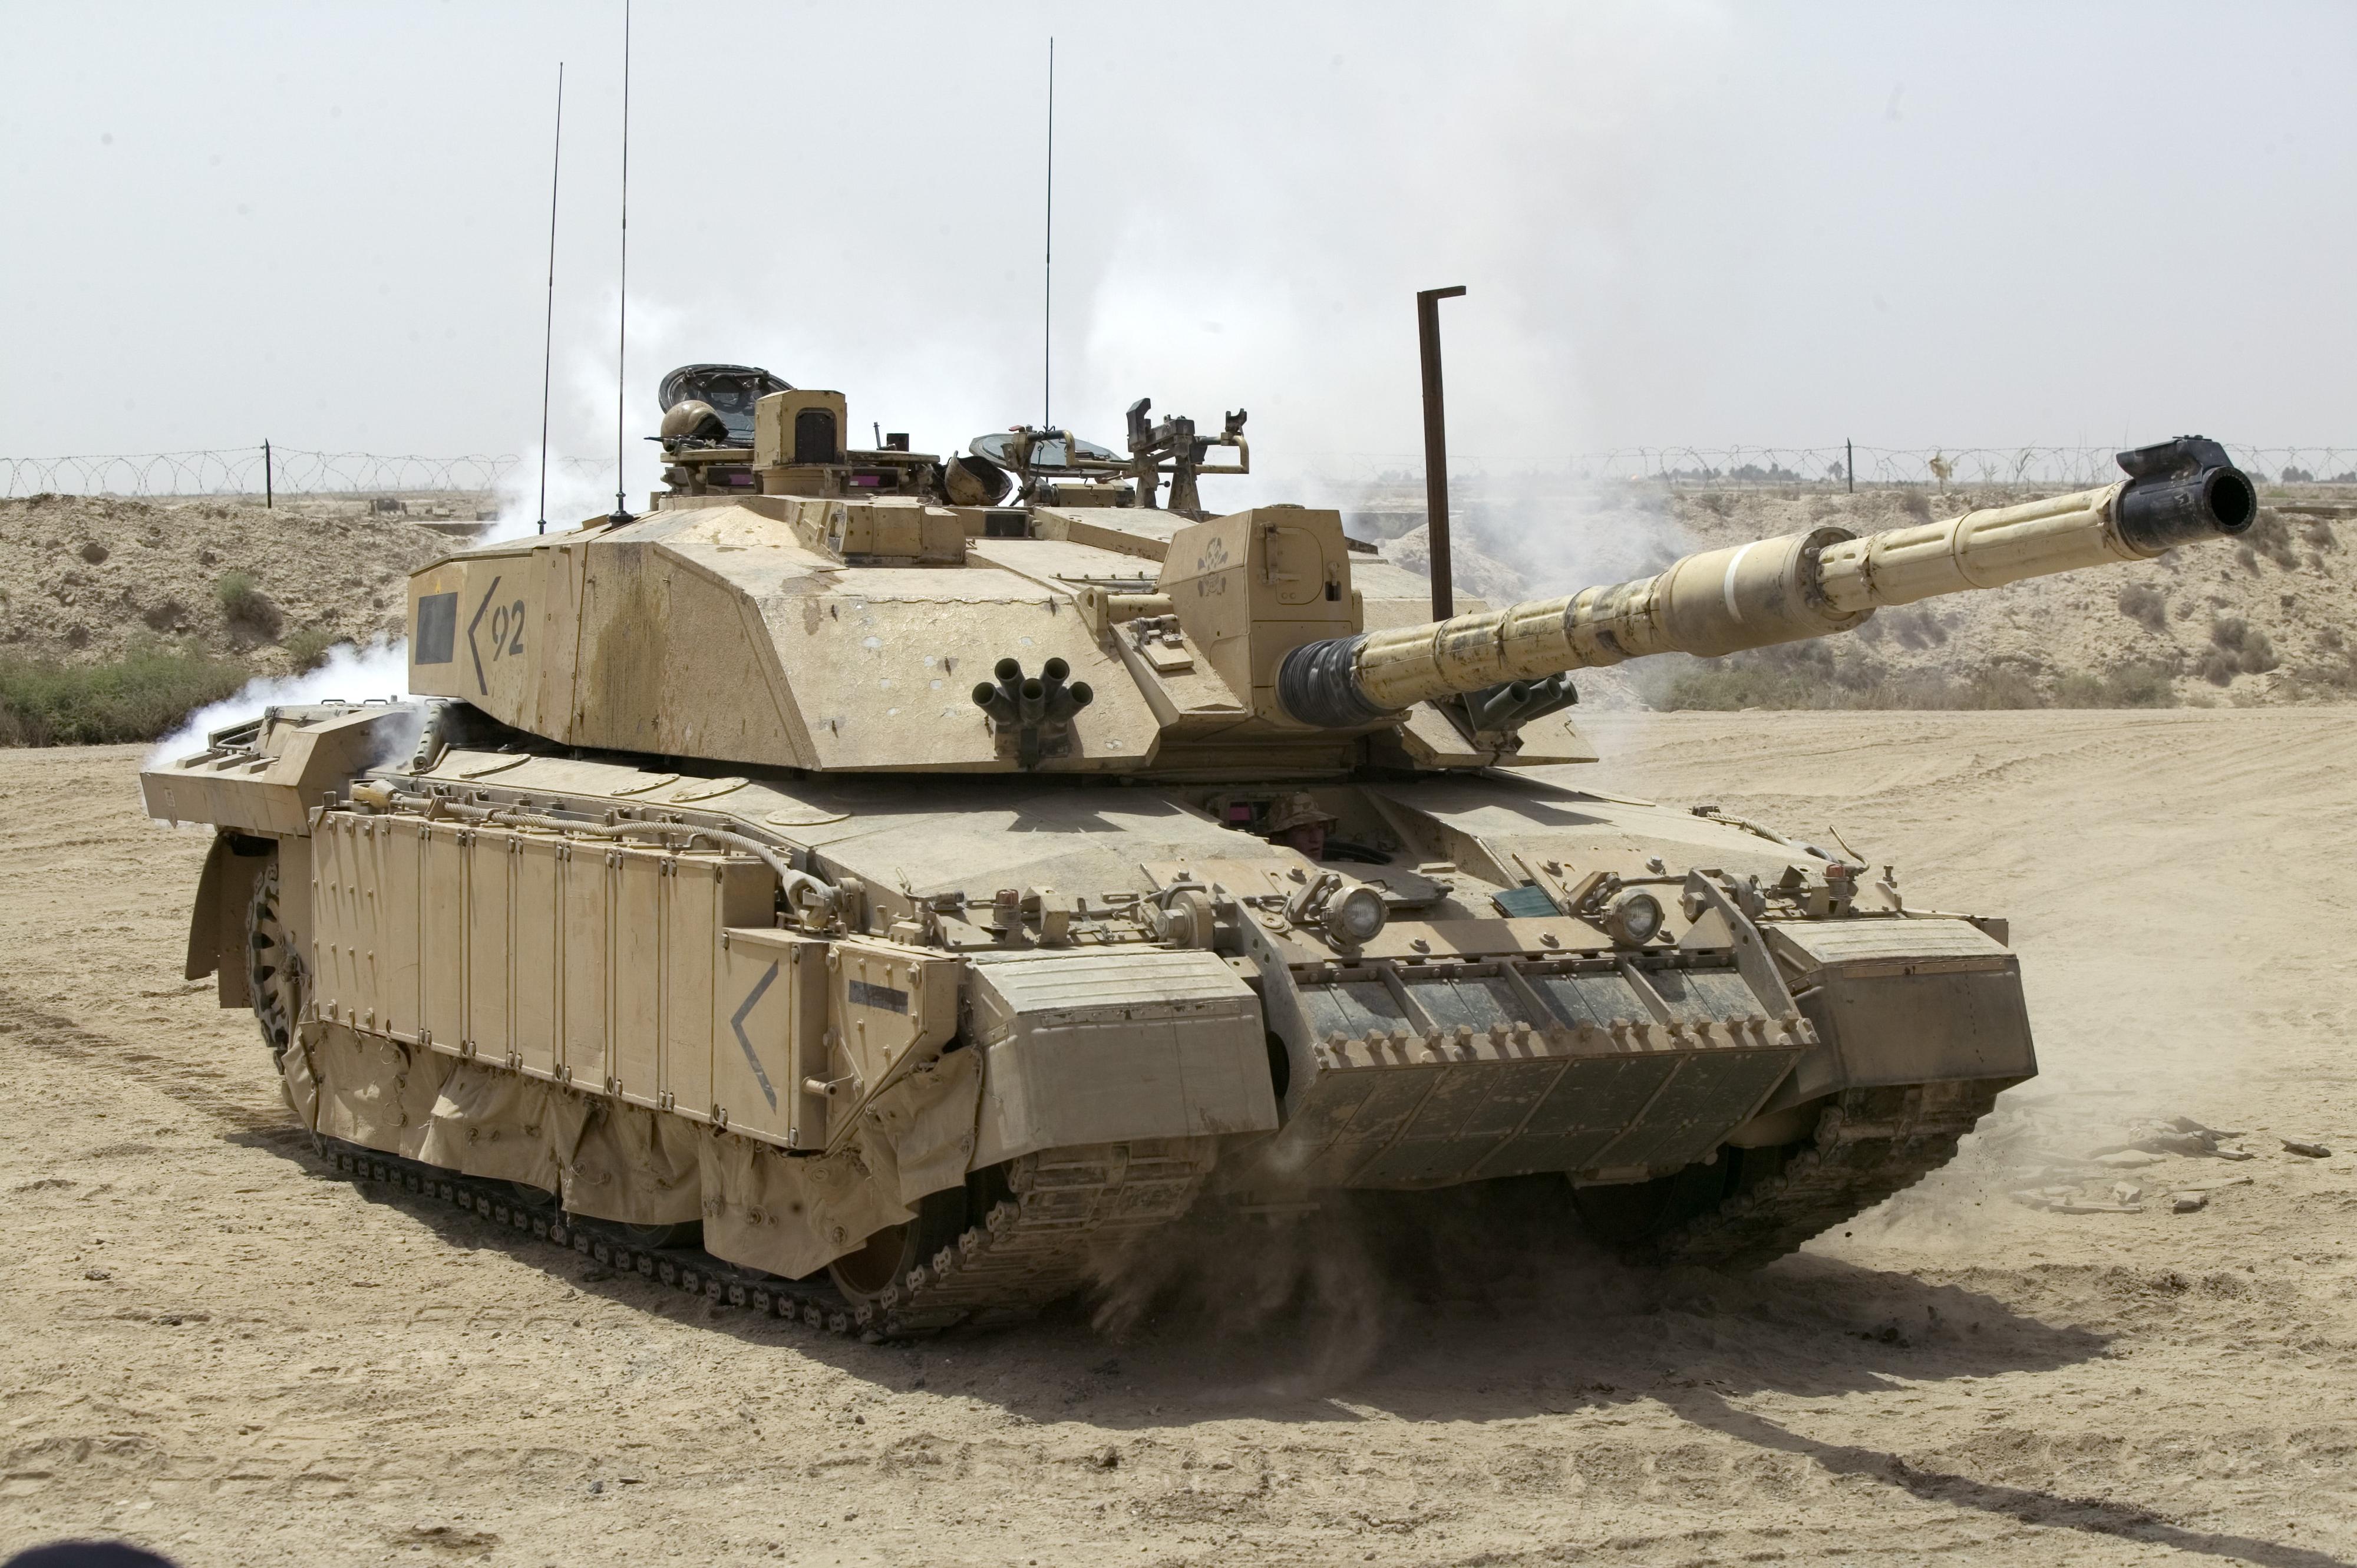 Un tank britannique Challenger 2 durant l'Opération Telic lors de l'nvasion de l'Irak par les États-Unis en 2003. [OGL v1.0 - Graeme Main/MOD]